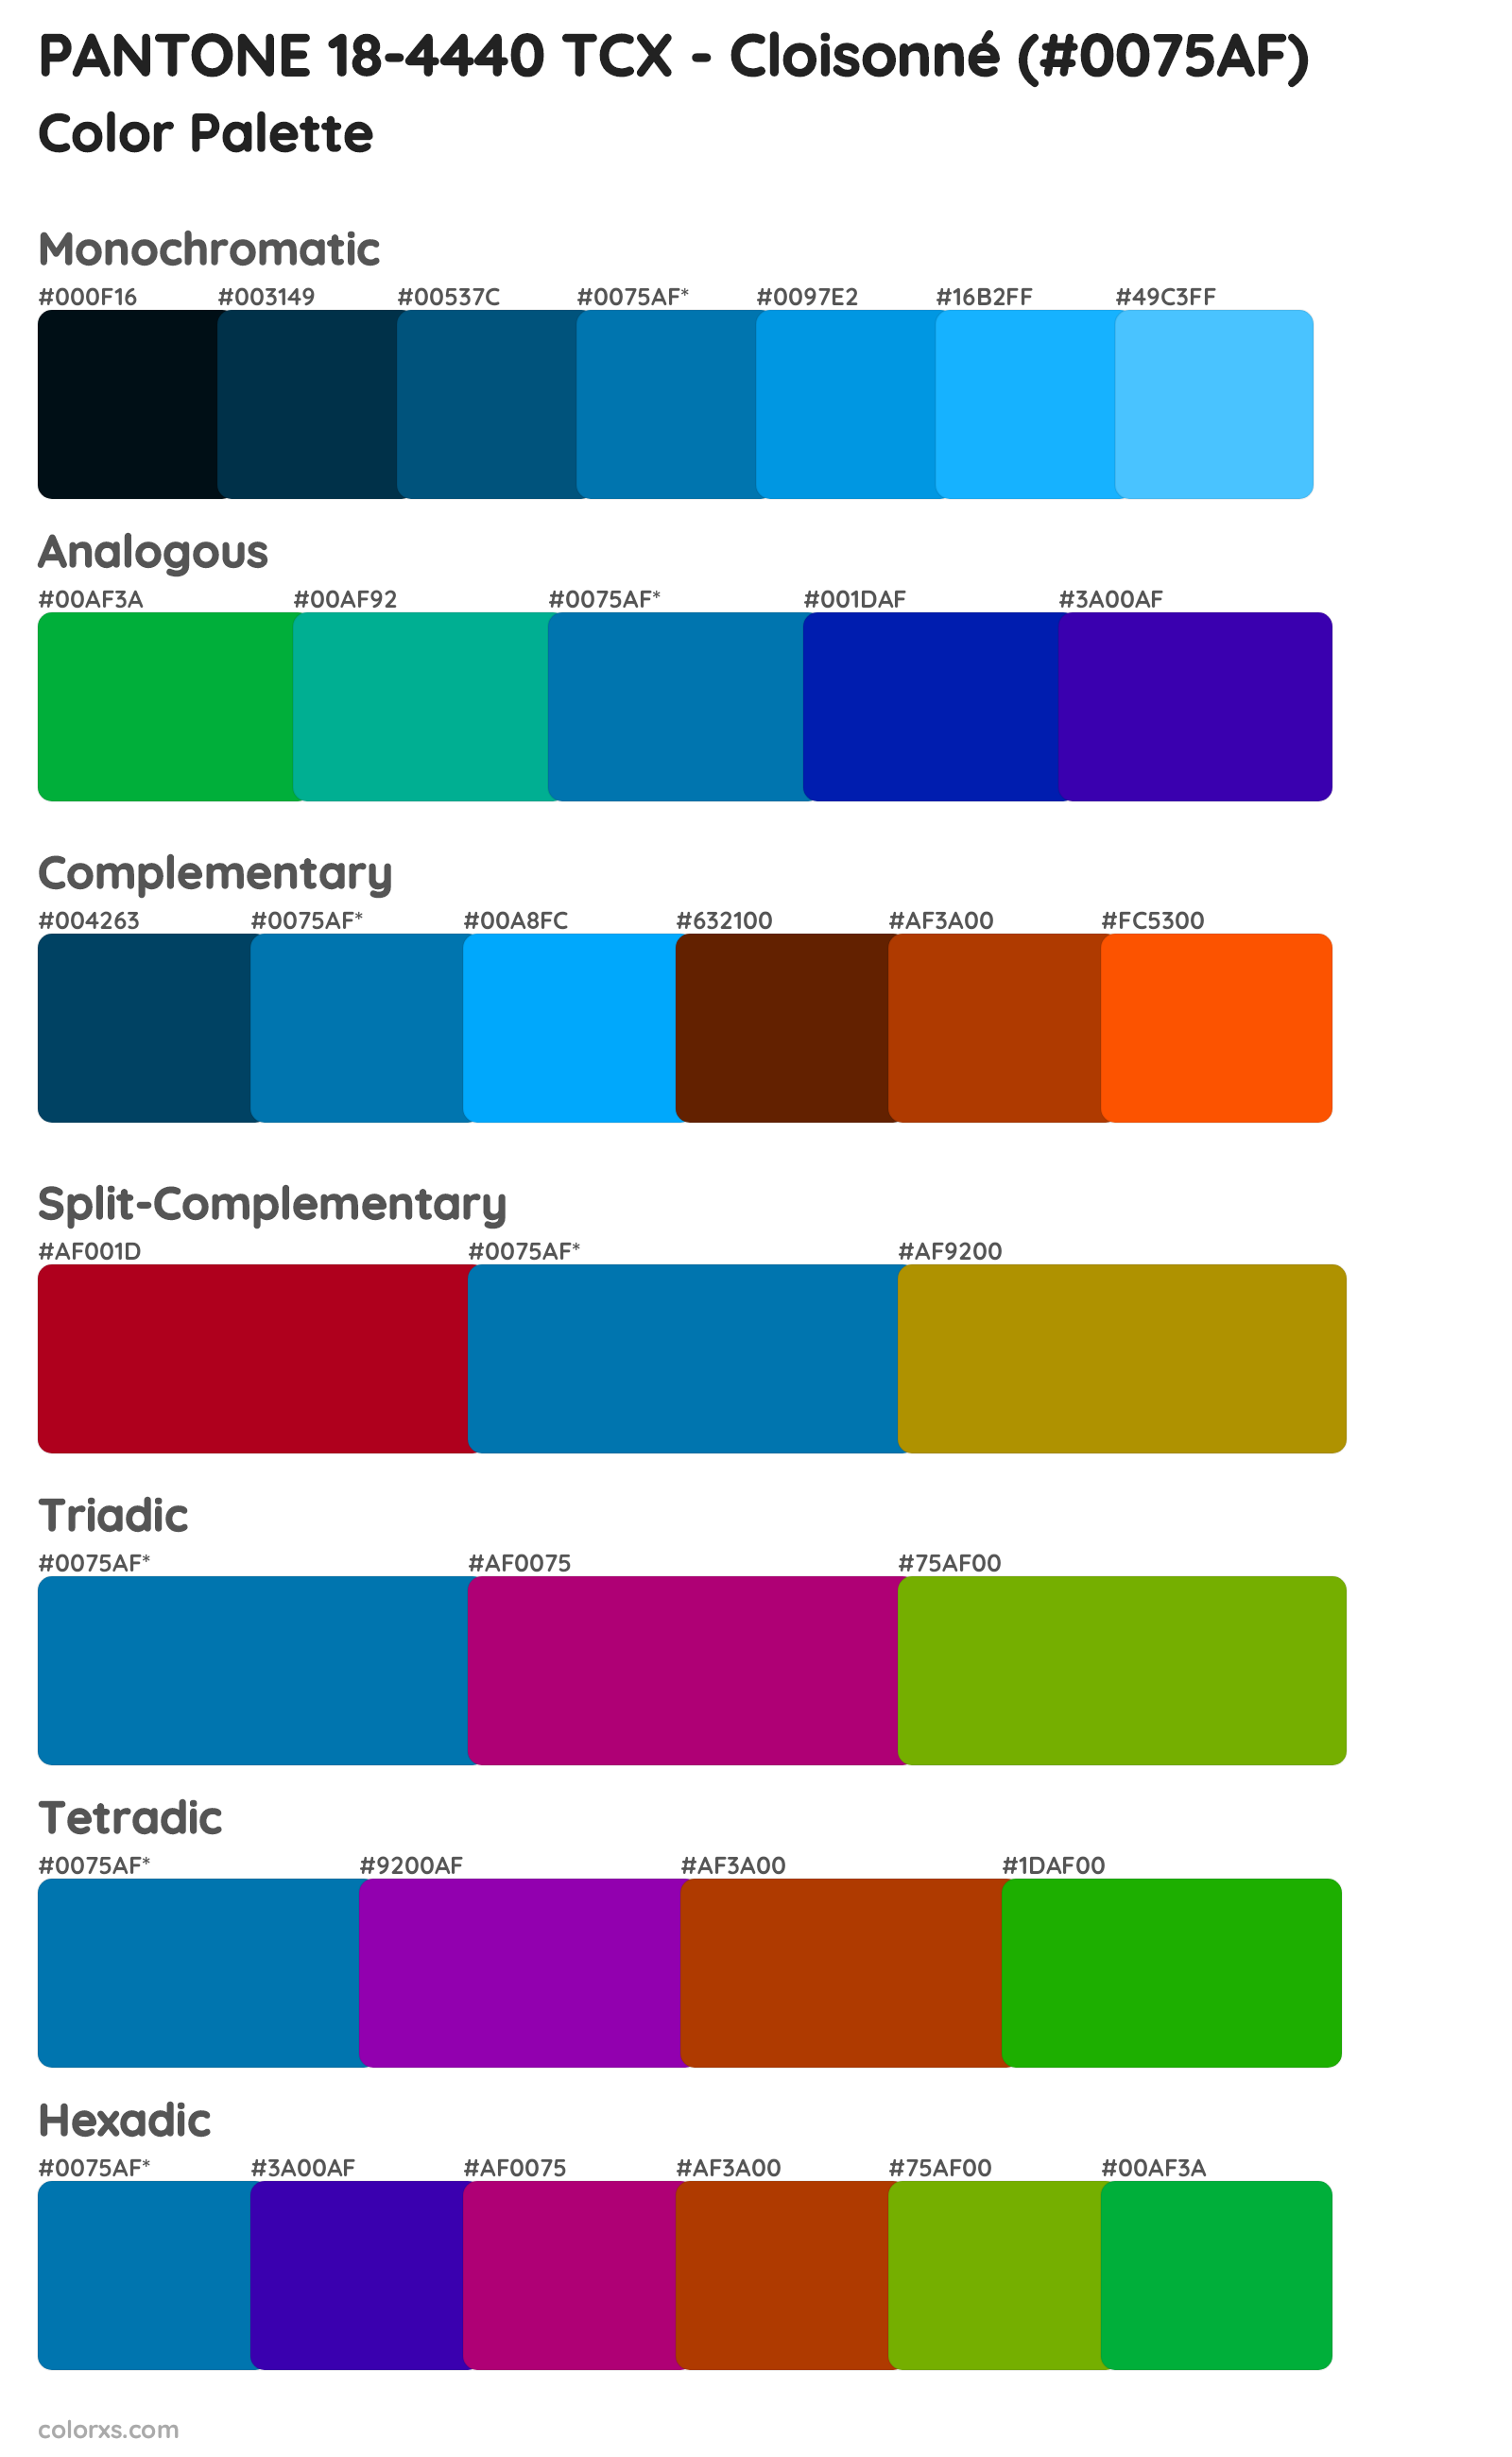 PANTONE 18-4440 TCX - Cloisonné Color Scheme Palettes